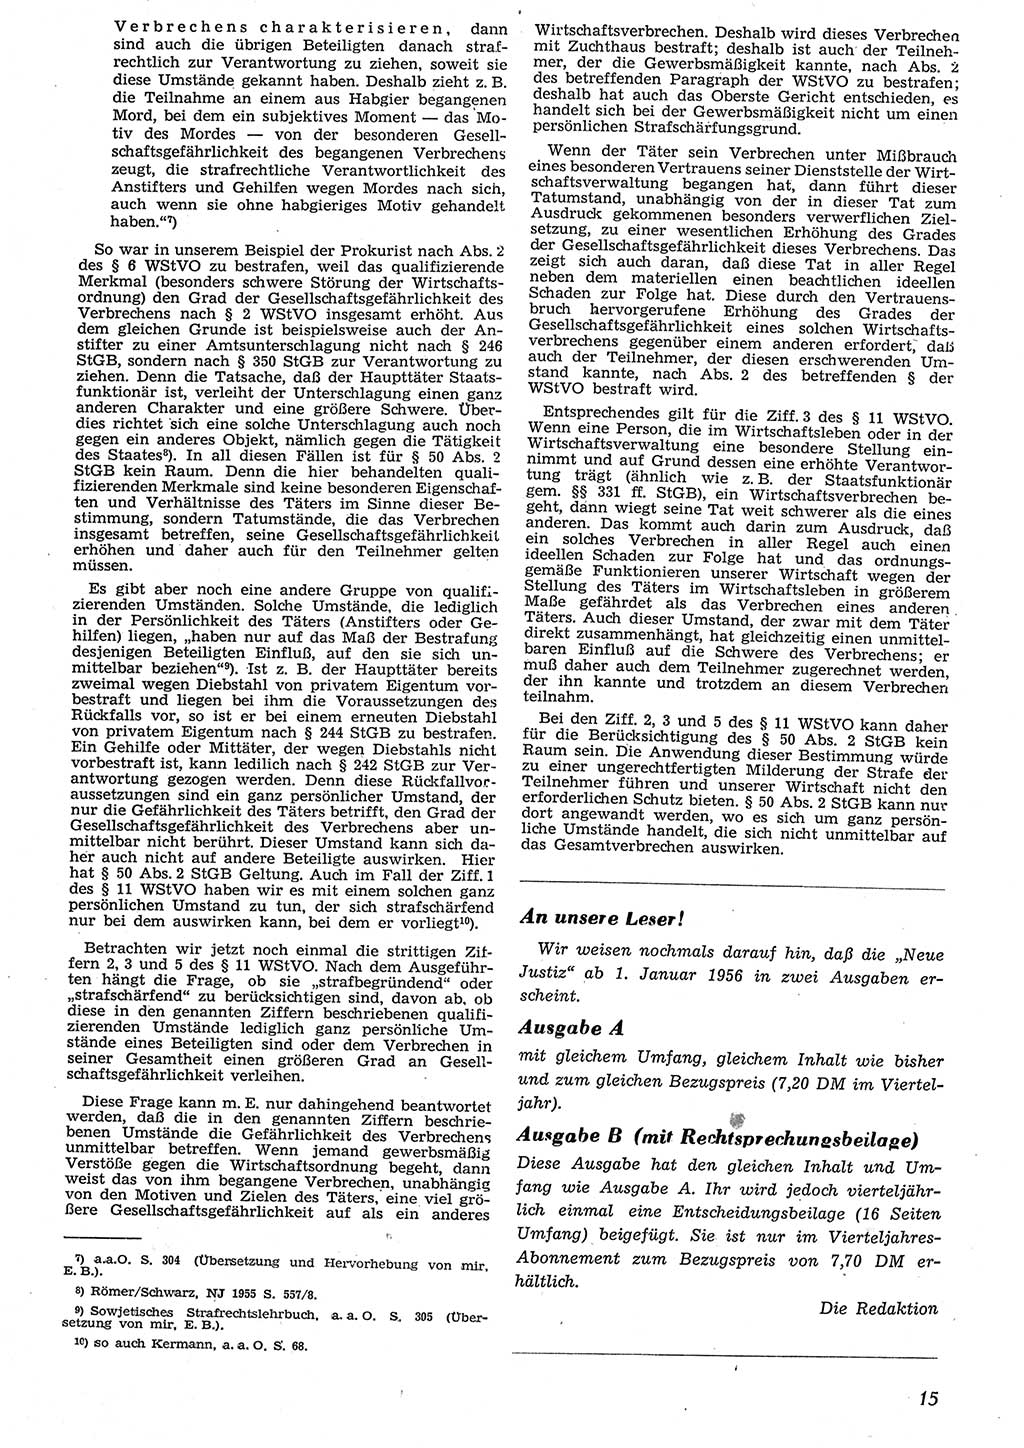 Neue Justiz (NJ), Zeitschrift für Recht und Rechtswissenschaft [Deutsche Demokratische Republik (DDR)], 10. Jahrgang 1956, Seite 15 (NJ DDR 1956, S. 15)